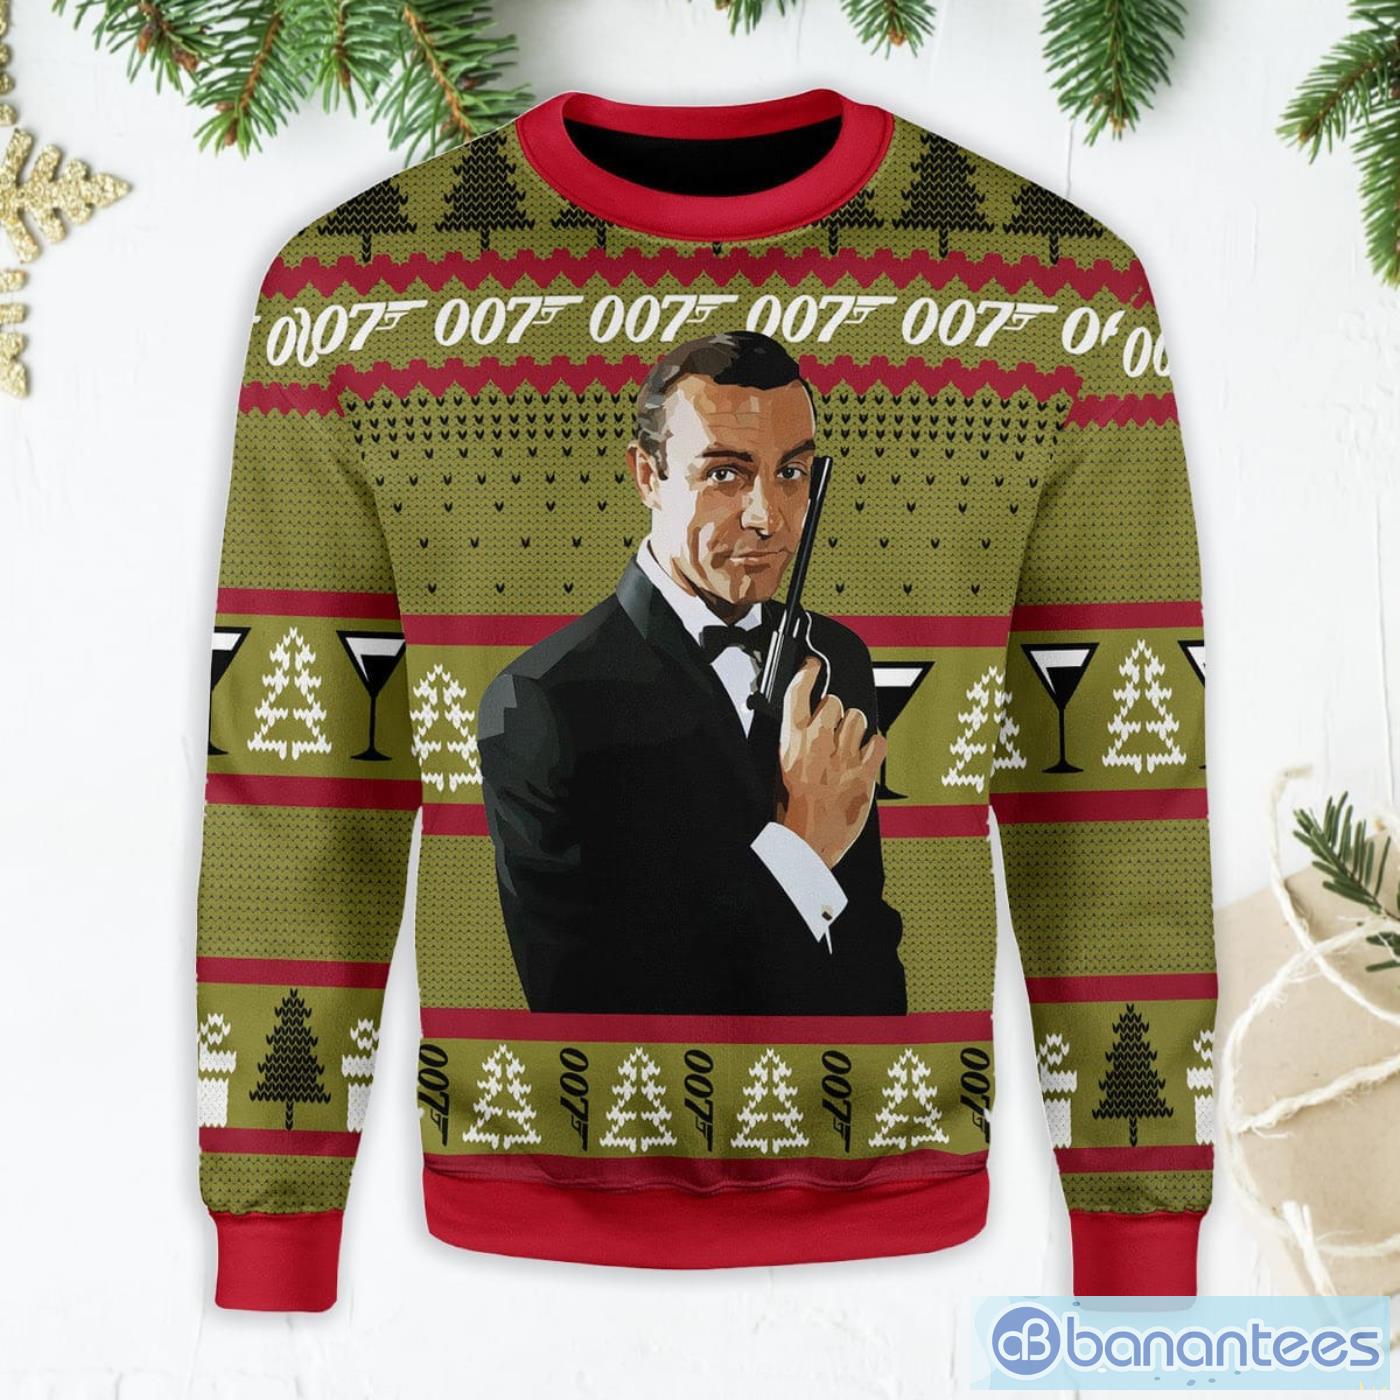 james-bond-007-ugly-christmas-sweater.jpg